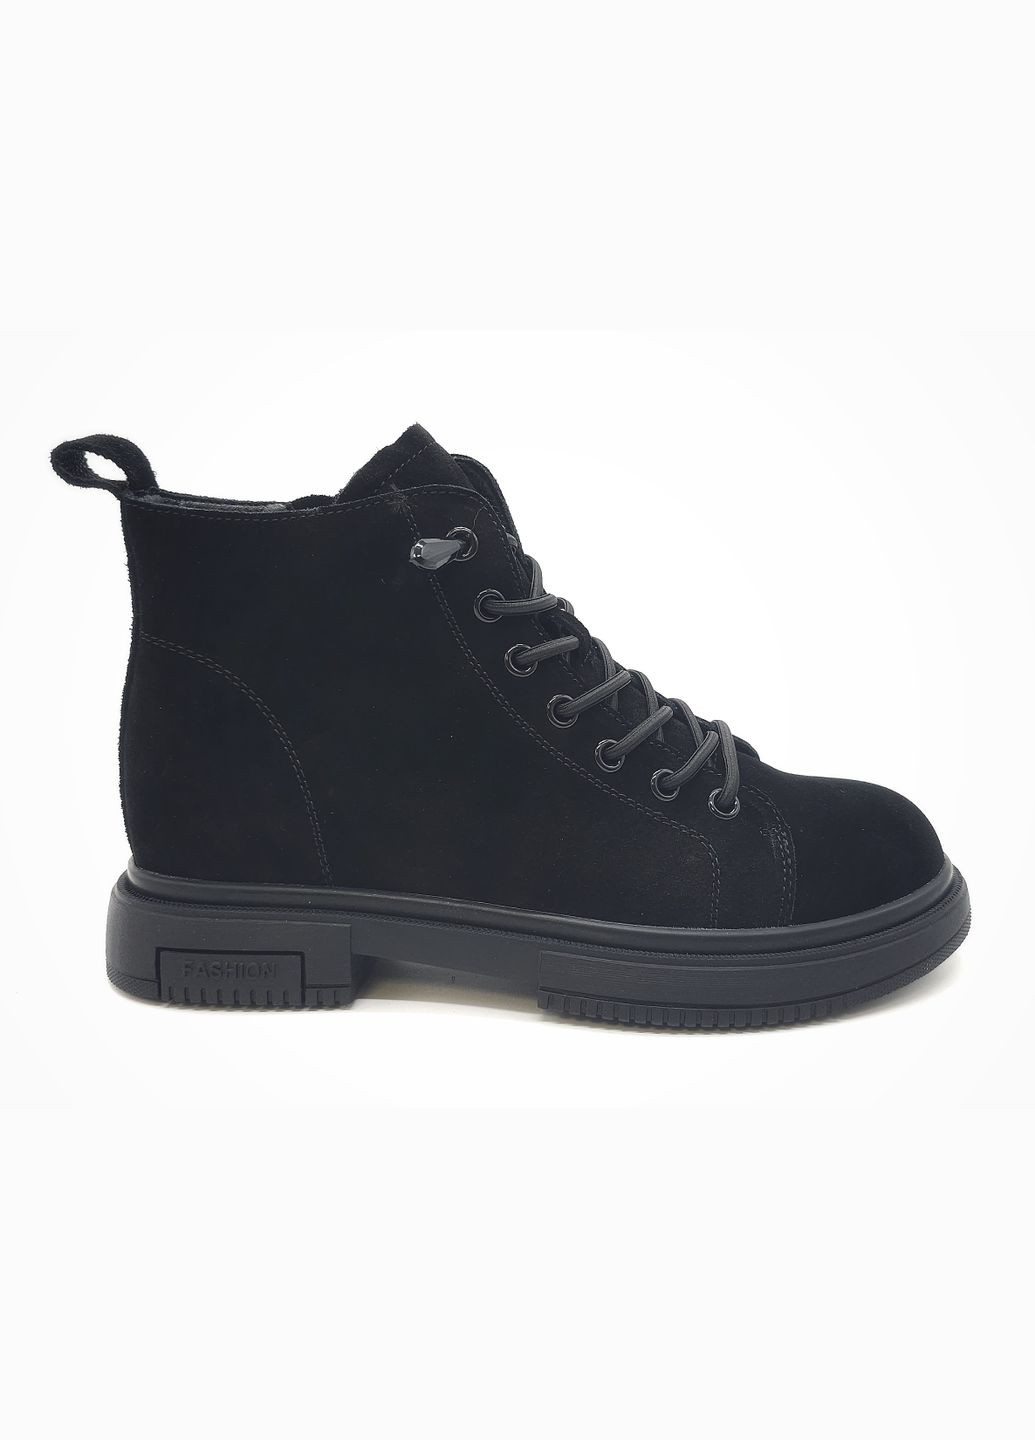 Осенние женские ботинки черные замшевые l-13-2 23 см (р) Lonza